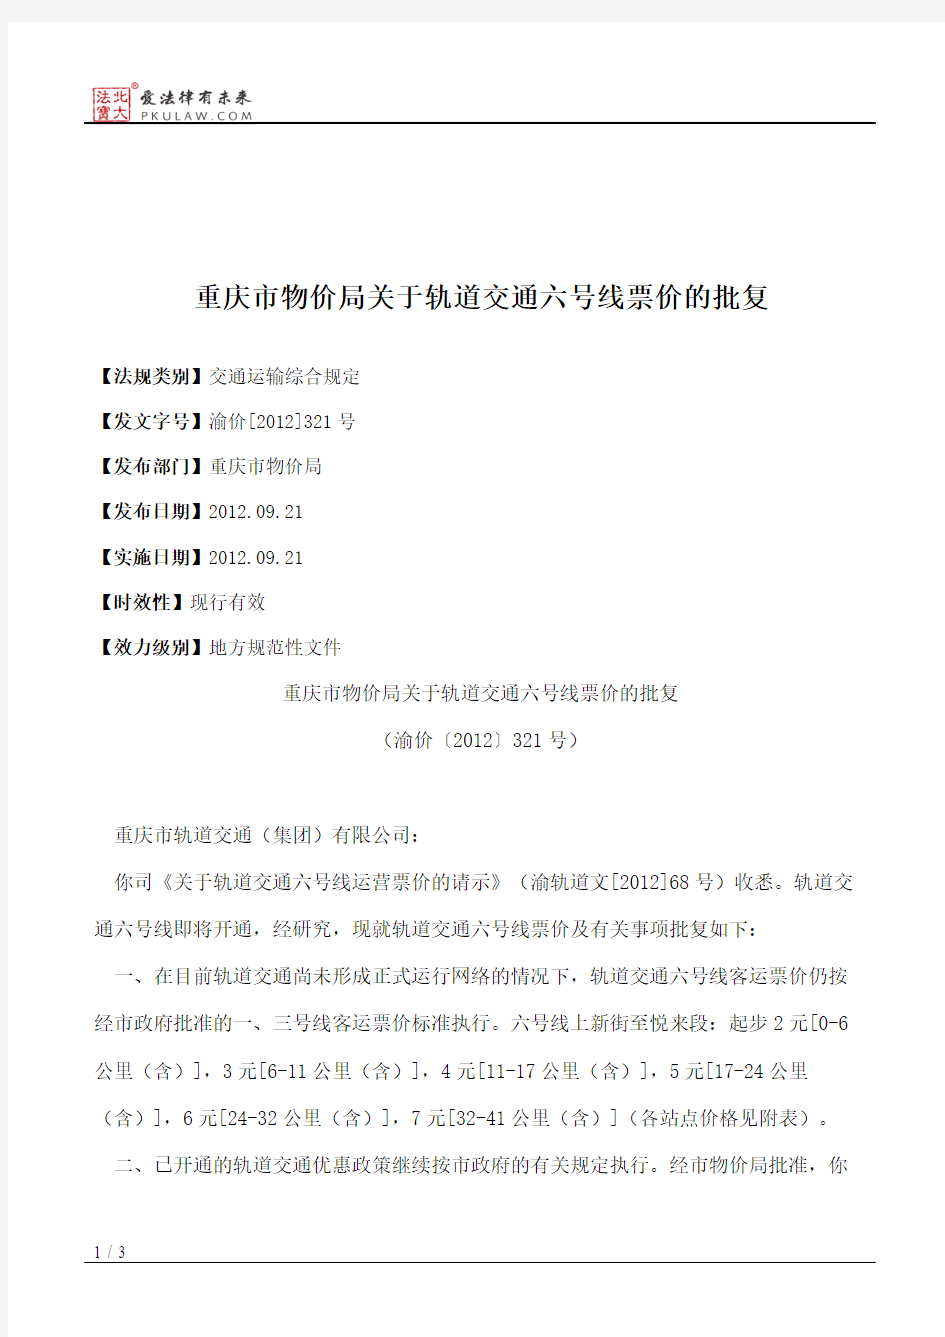 重庆市物价局关于轨道交通六号线票价的批复